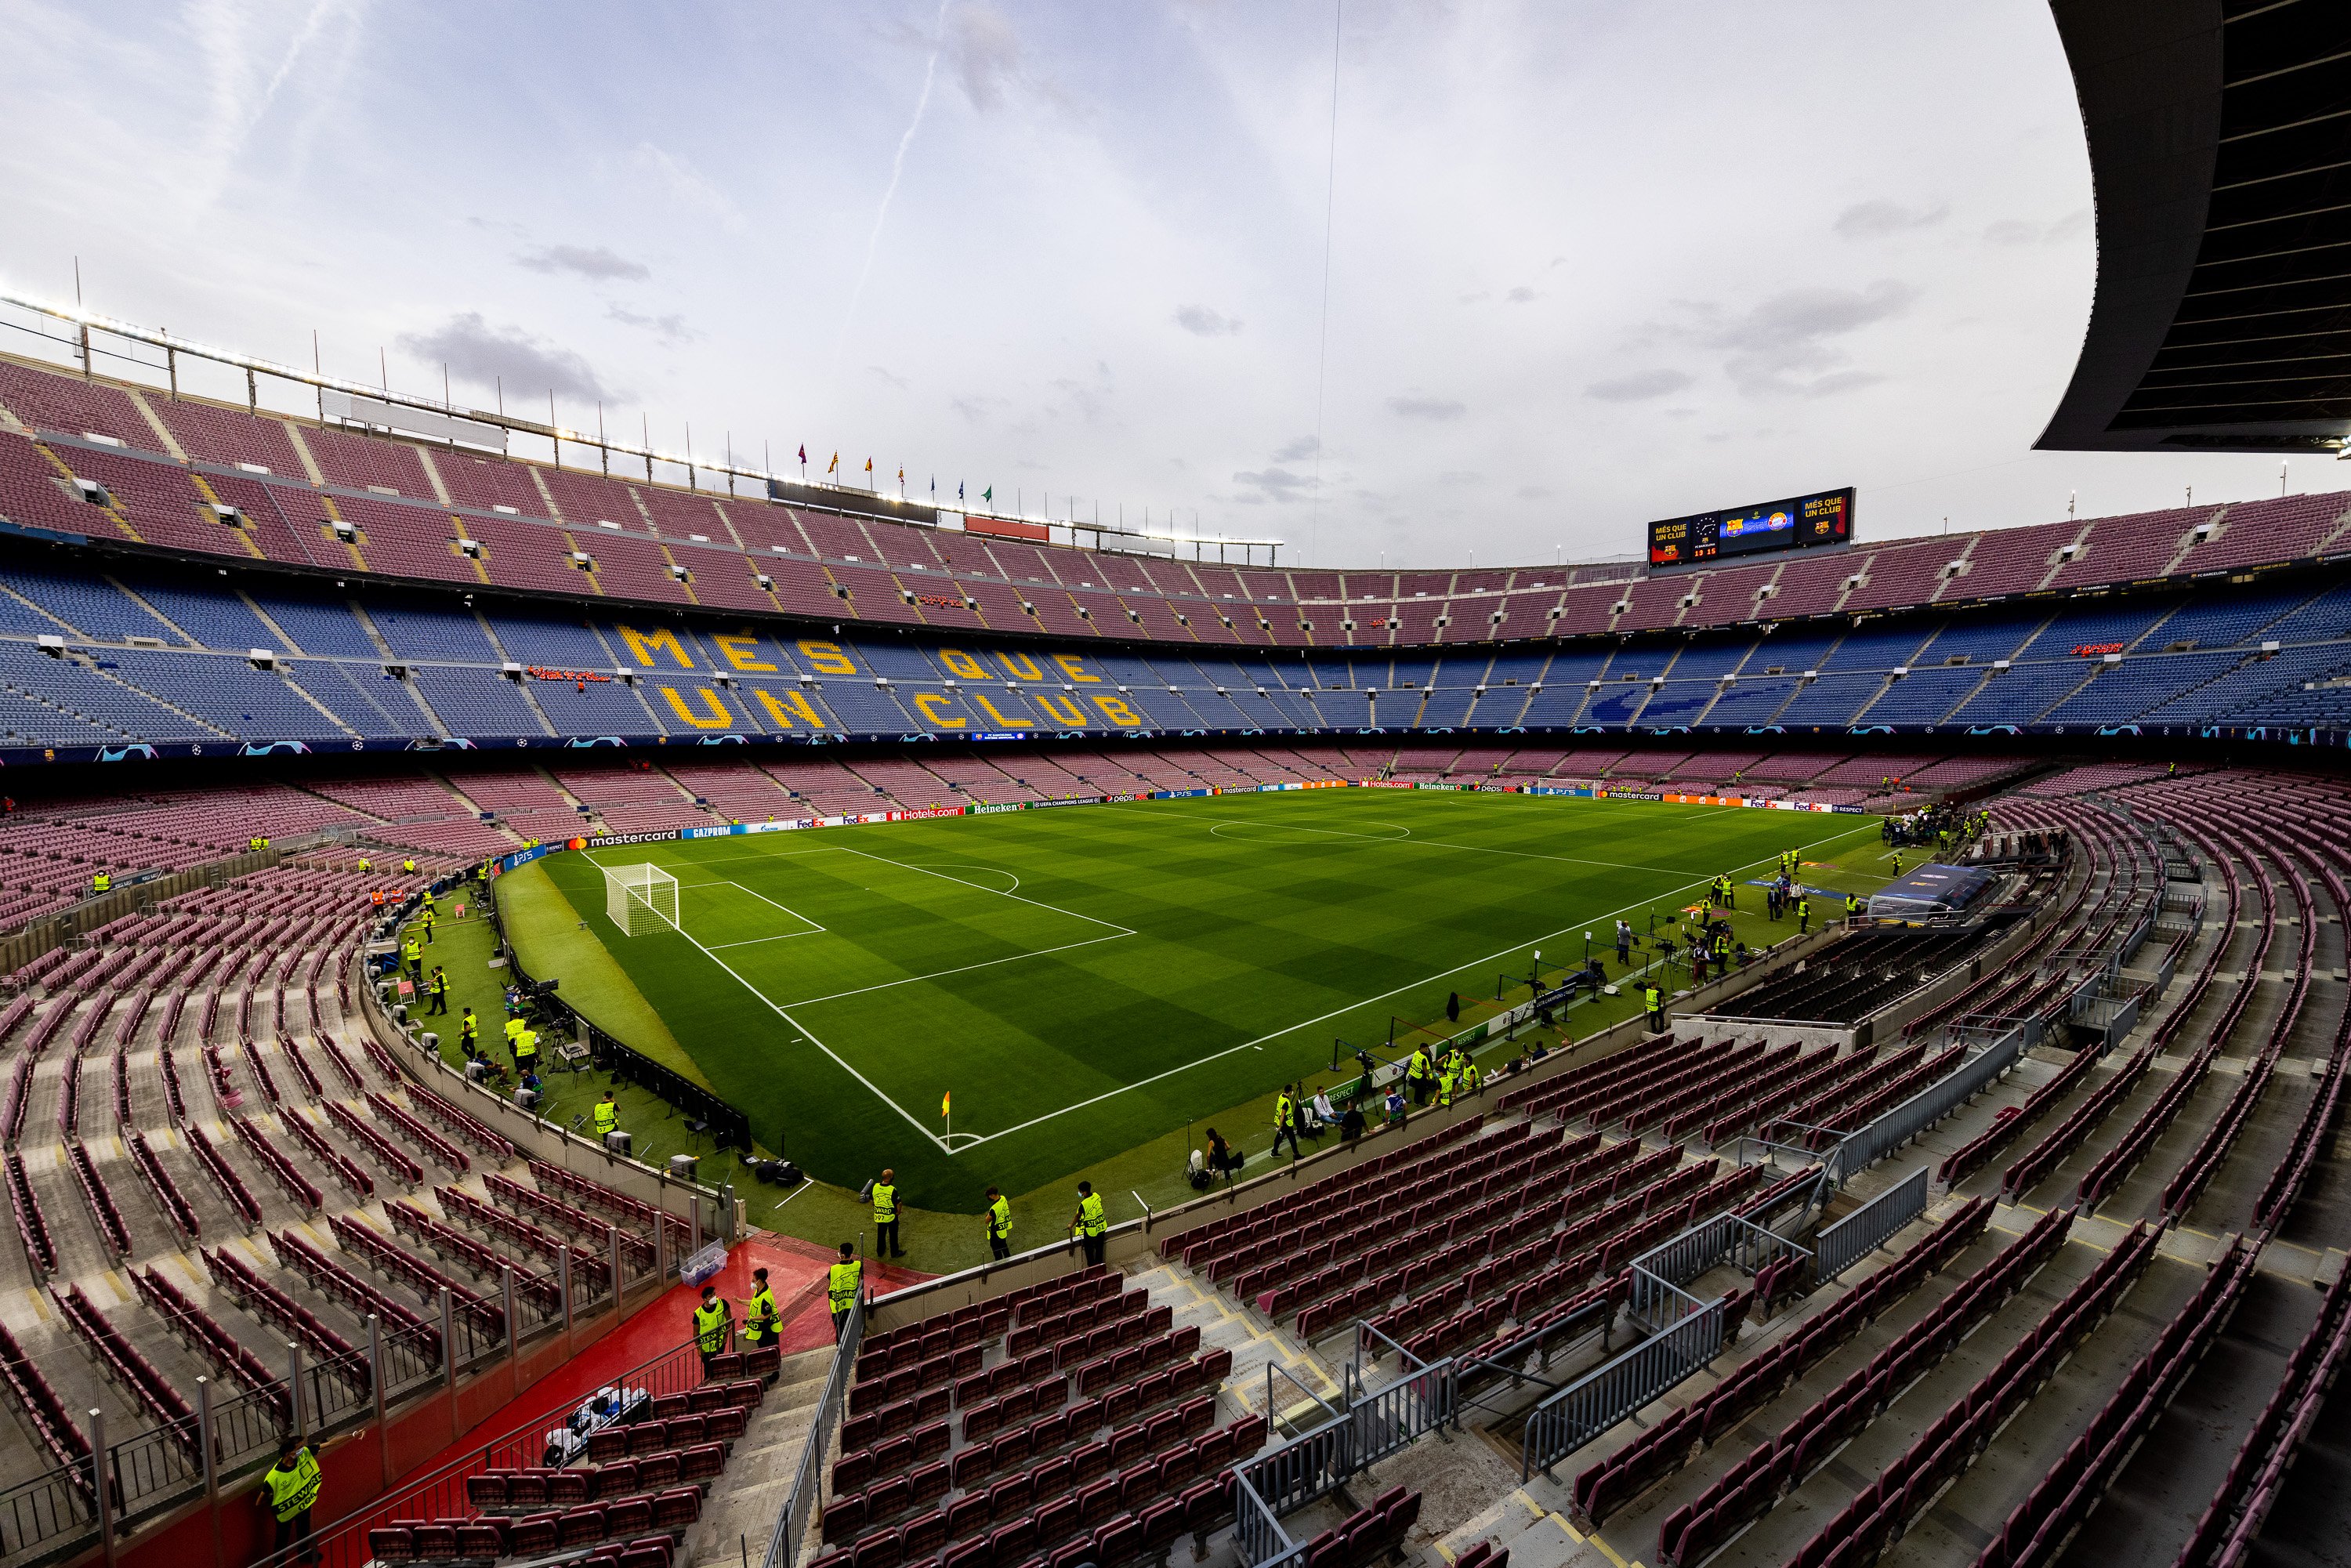 El Barça de Bartomeu puso en riesgo la integridad física de los socios al ignorar problemas en el Camp Nou